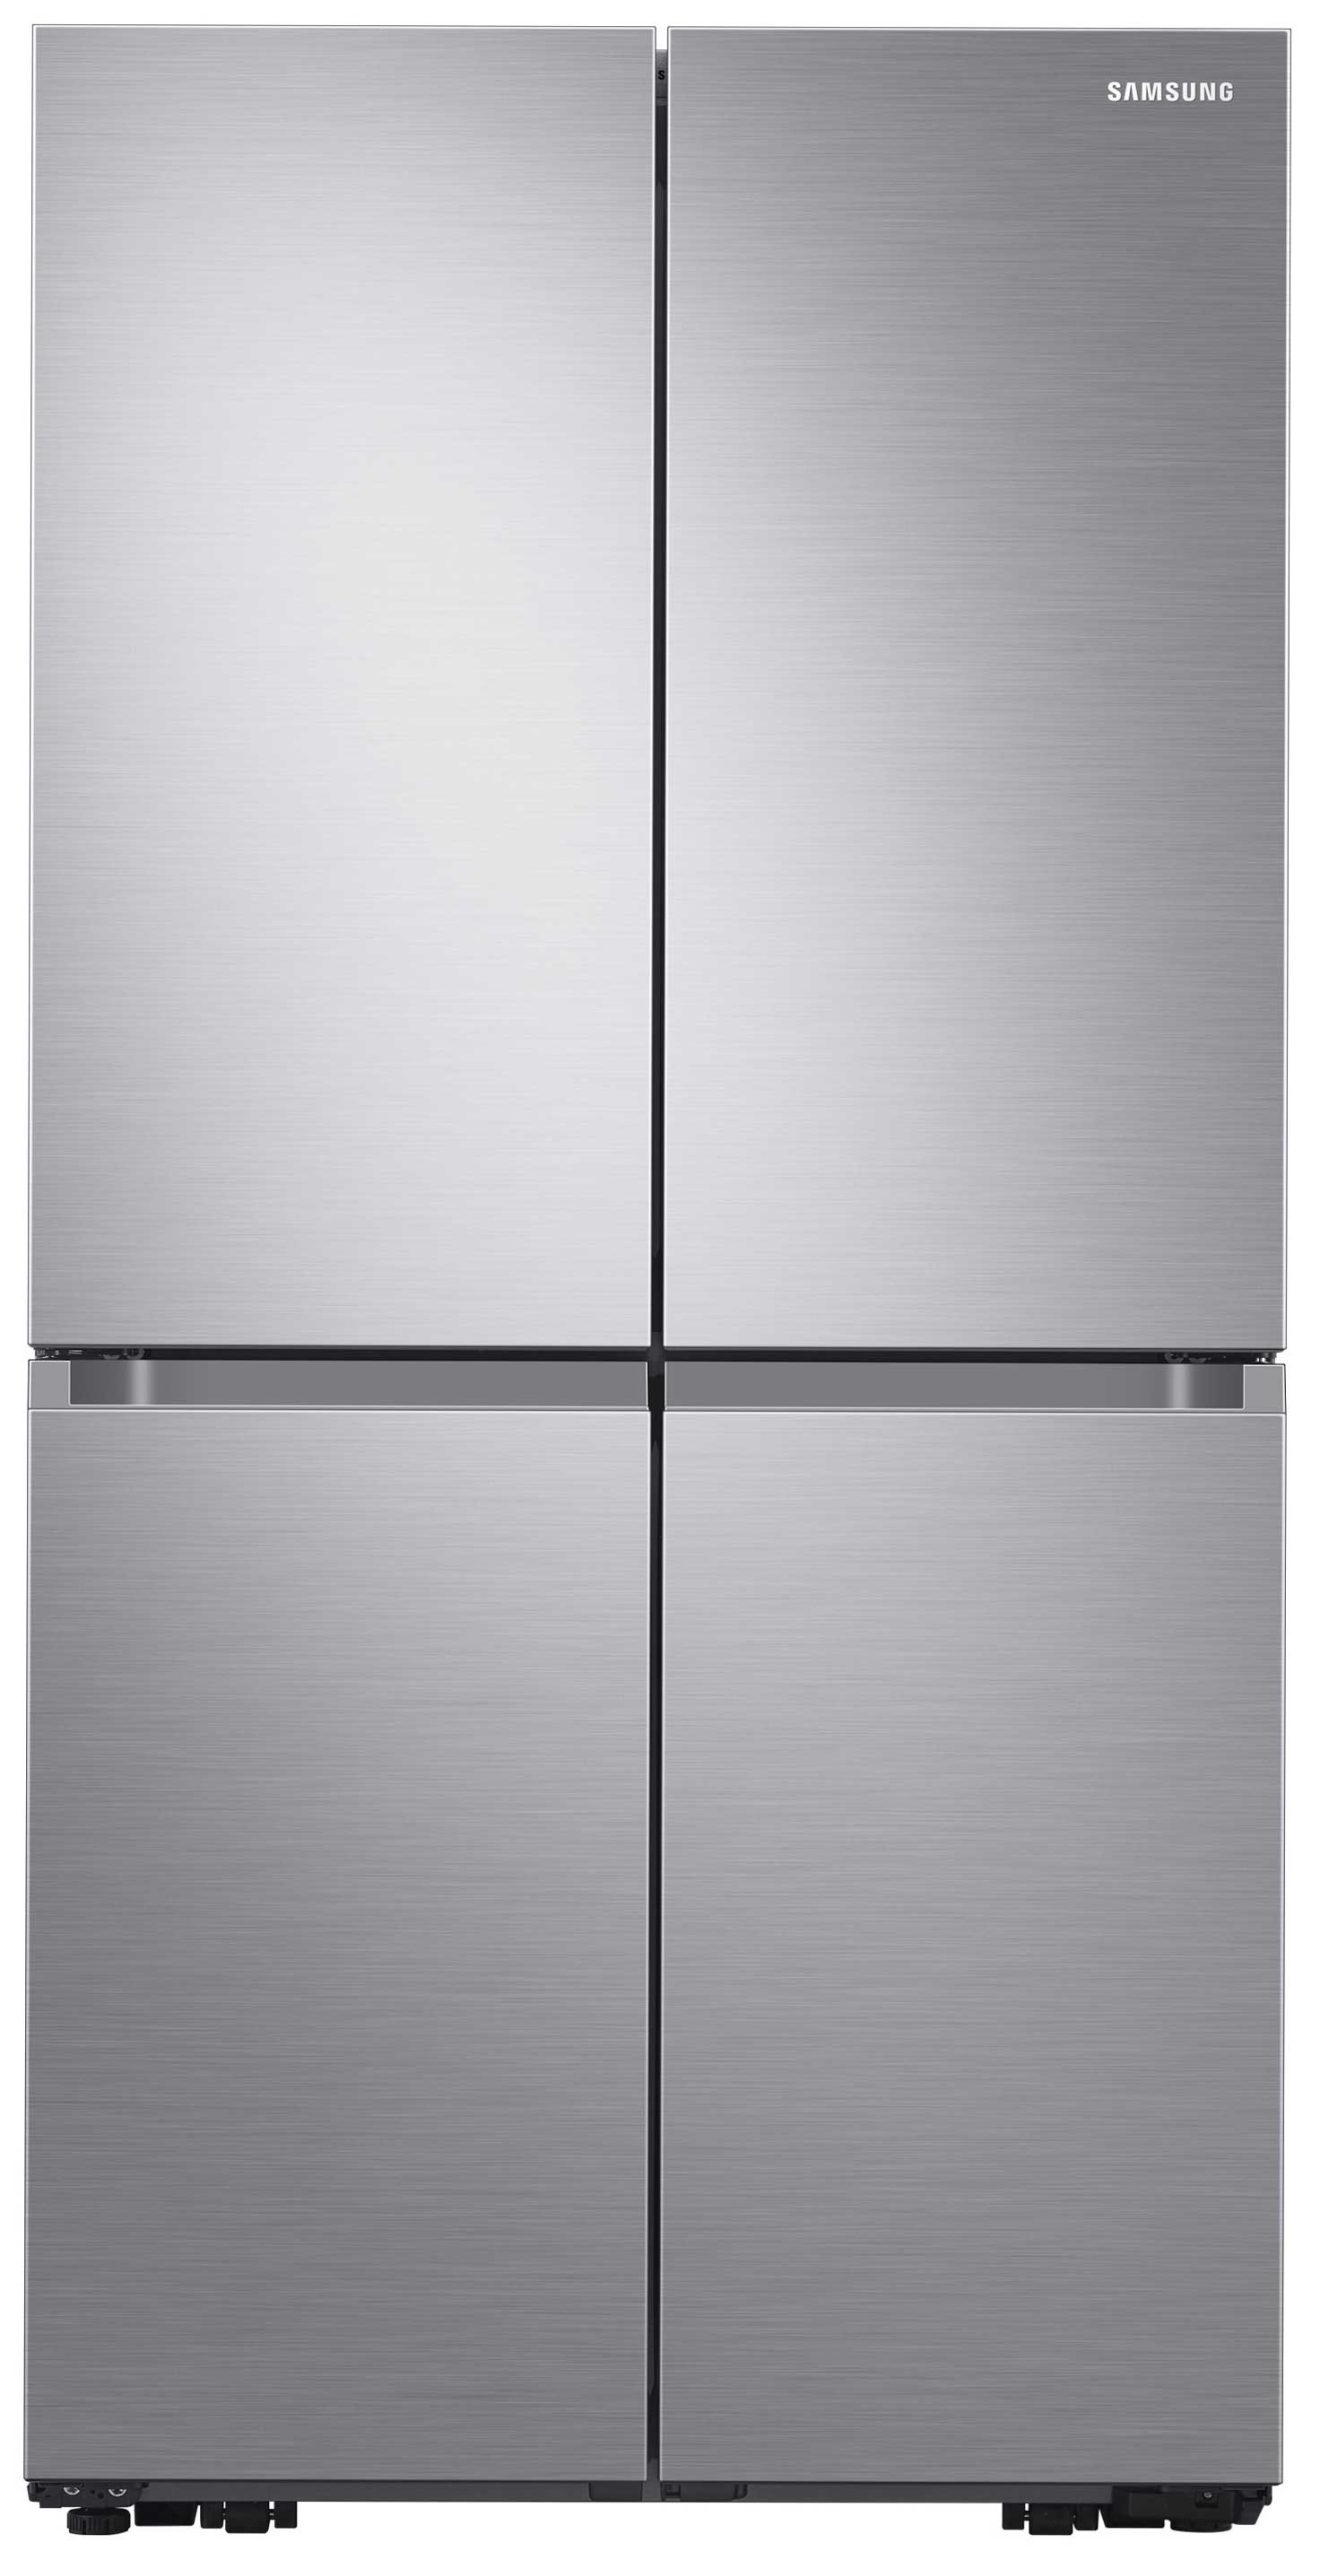 Réfrigérateur congélateur Samsung : les questions courantes (FAQ) » Déco 21